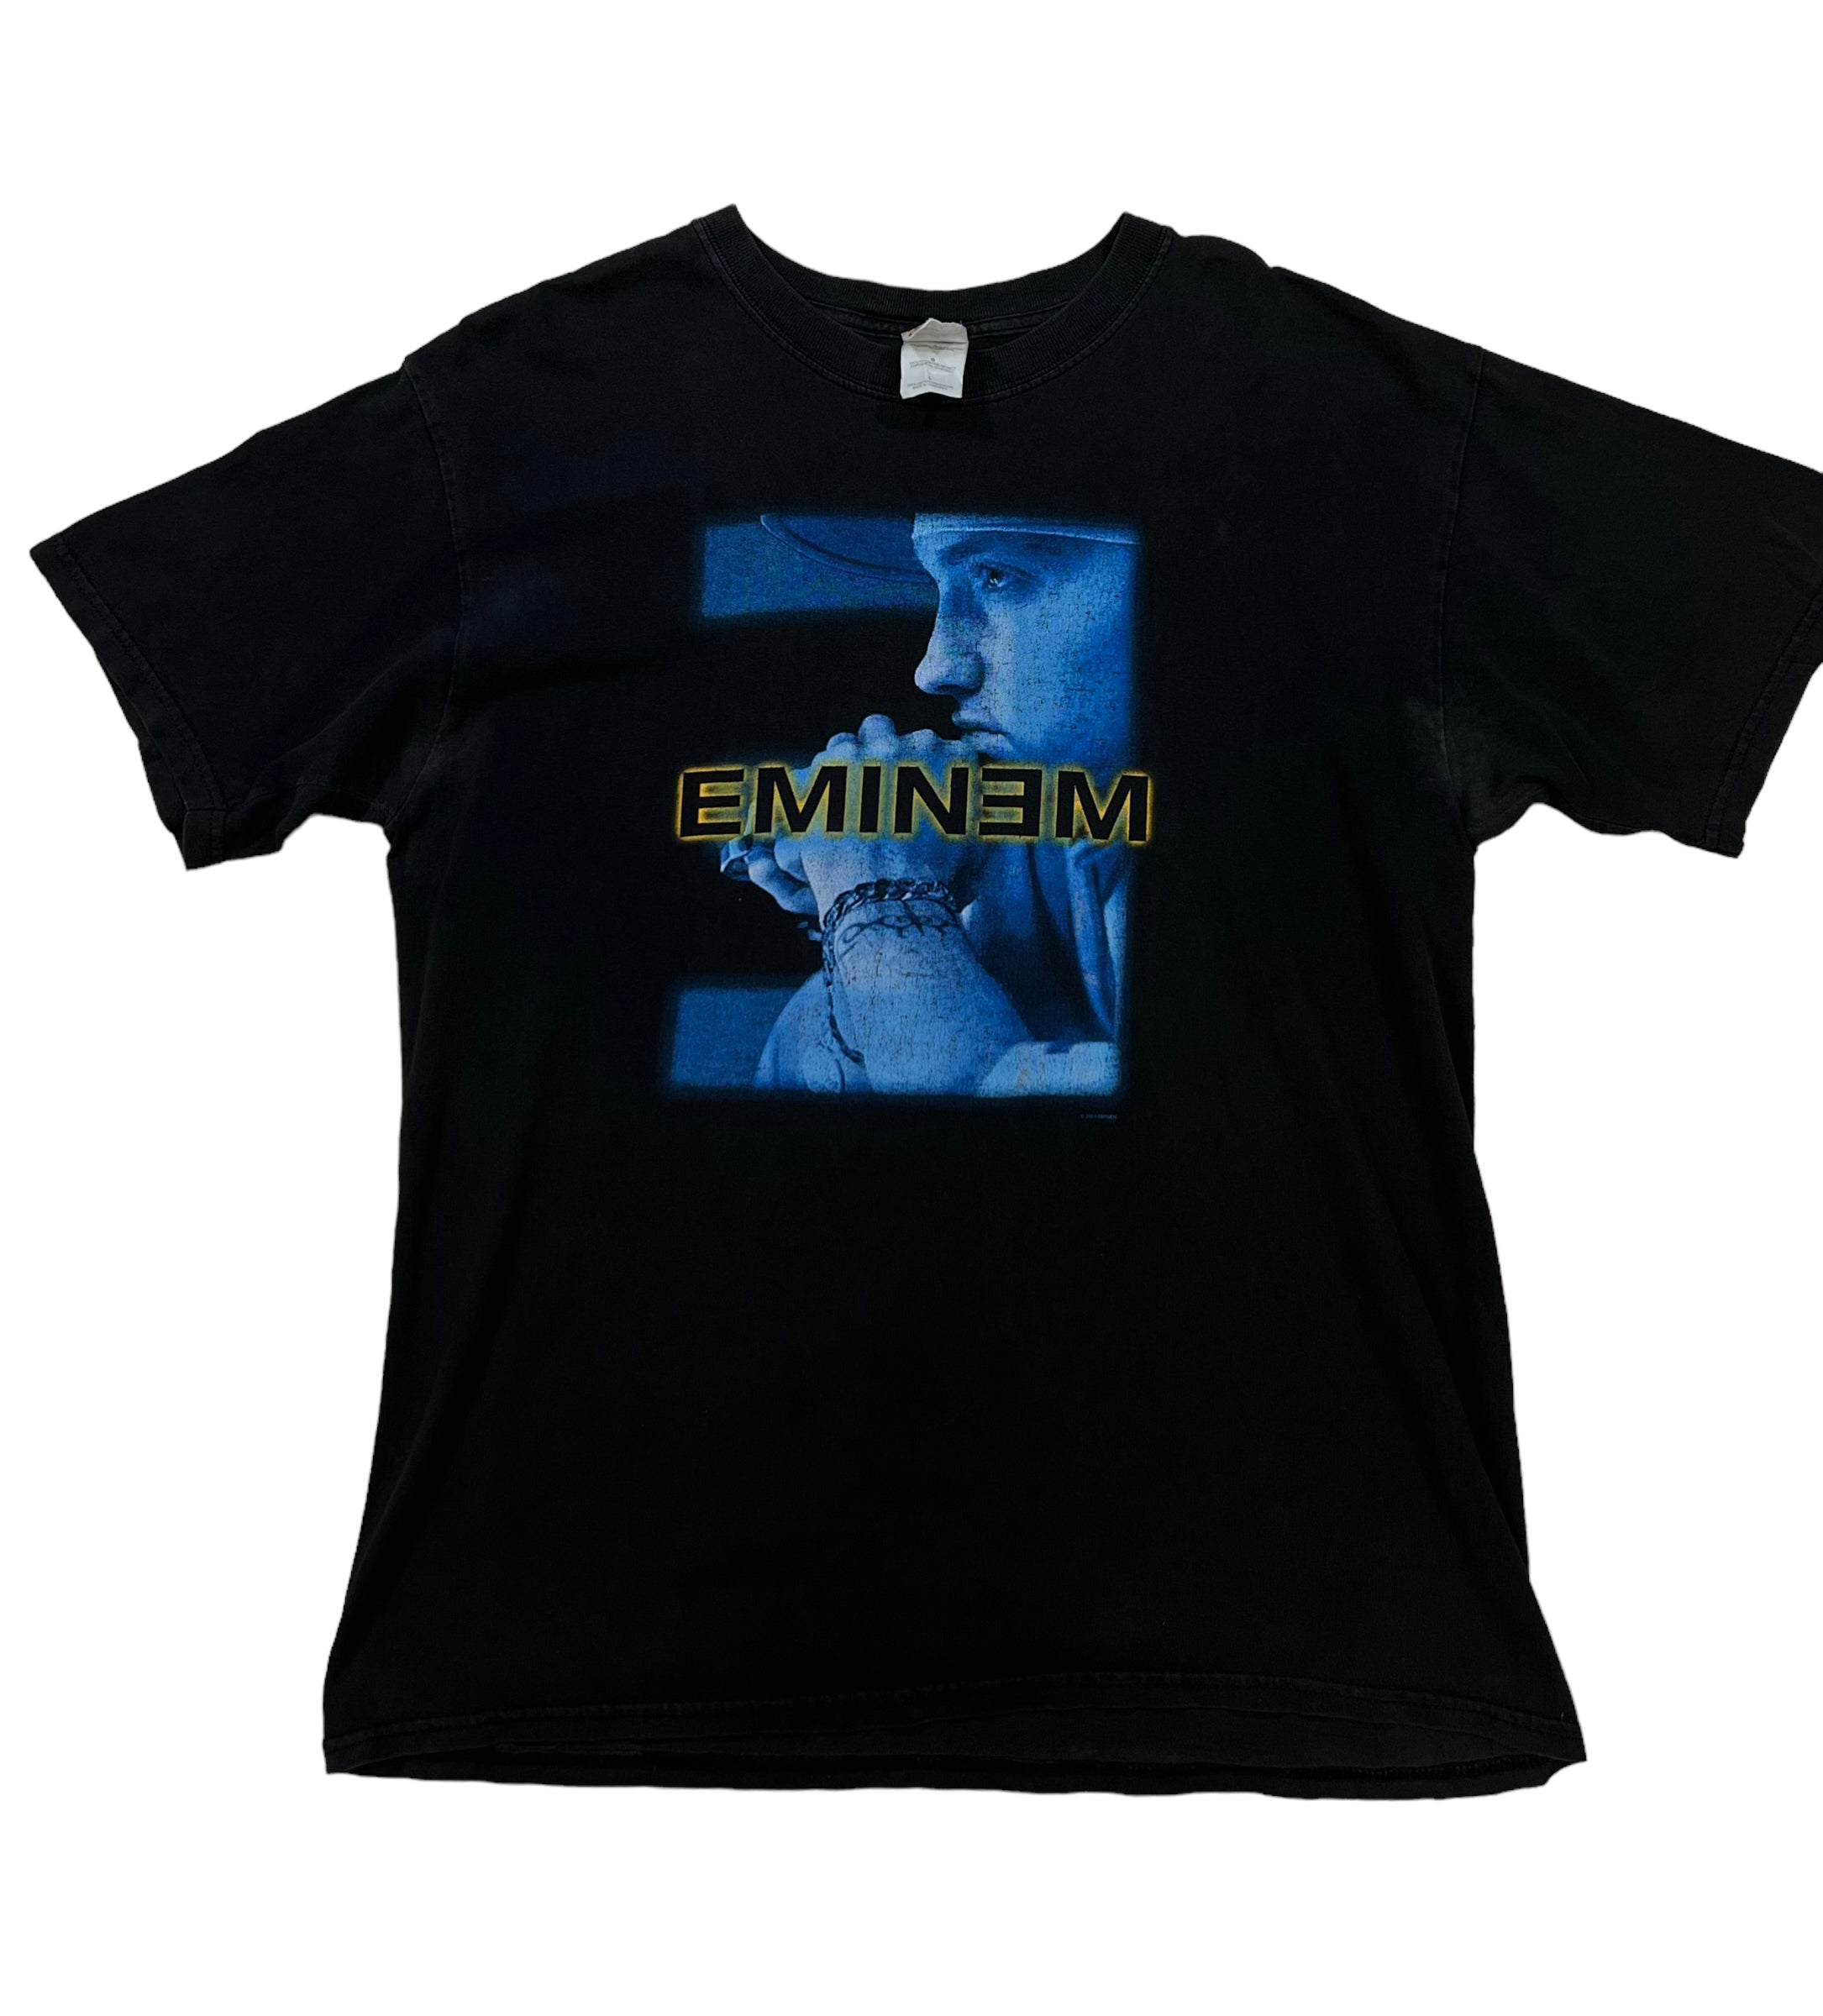 Eminem Black Graphic T-shirt